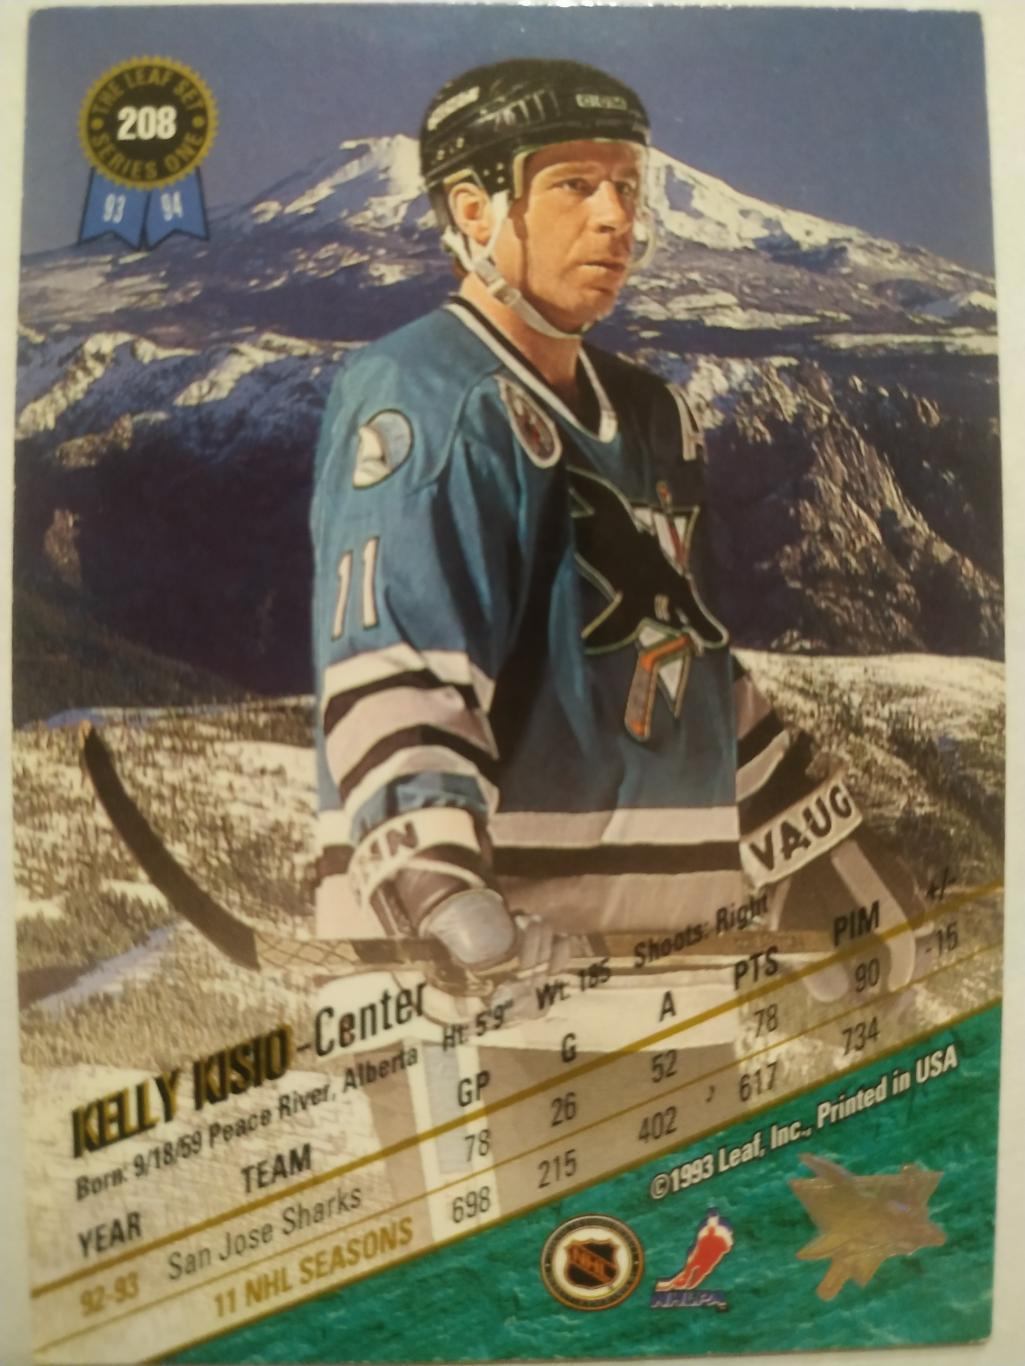 ХОККЕЙ КАРТОЧКА НХЛ LEAF SET SERIES ONE 1993-94 KELLY KISIO SAN JOSE SHARKS #208 1